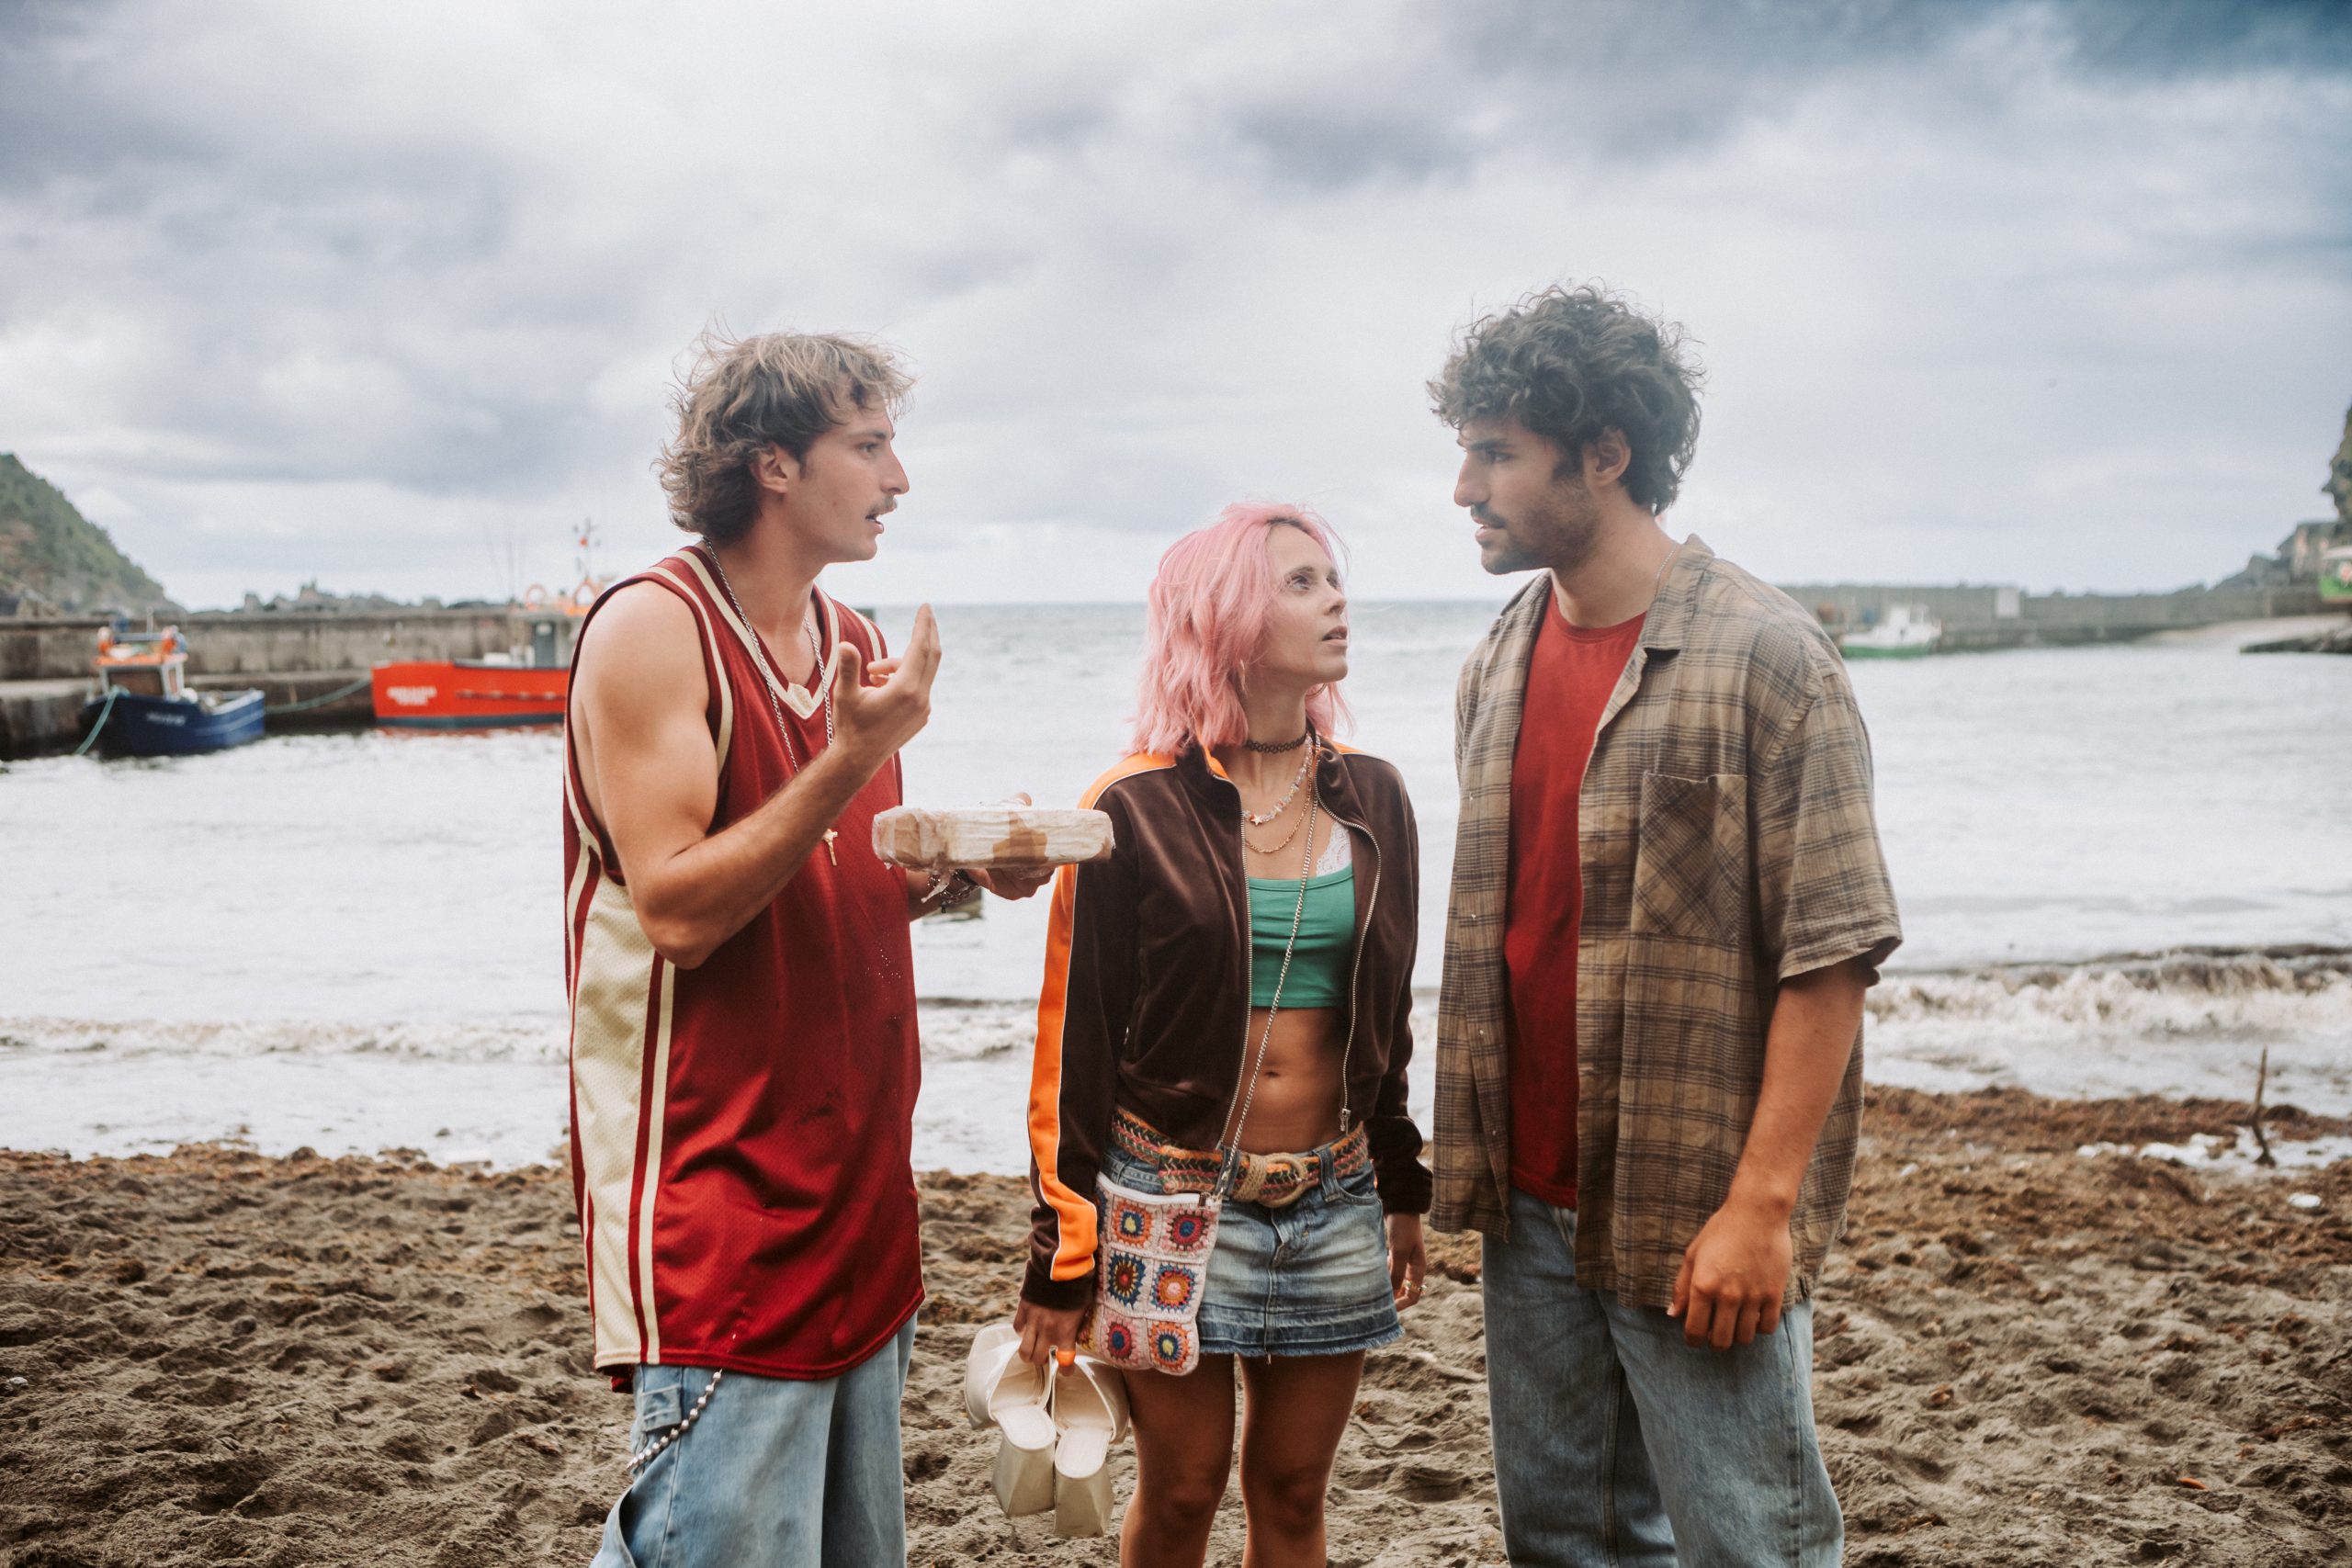 “Rabo de Peixe”, nova série portuguesa da Netflix, estreia em Maio. Vê as primeiras imagens e lê a sinopse